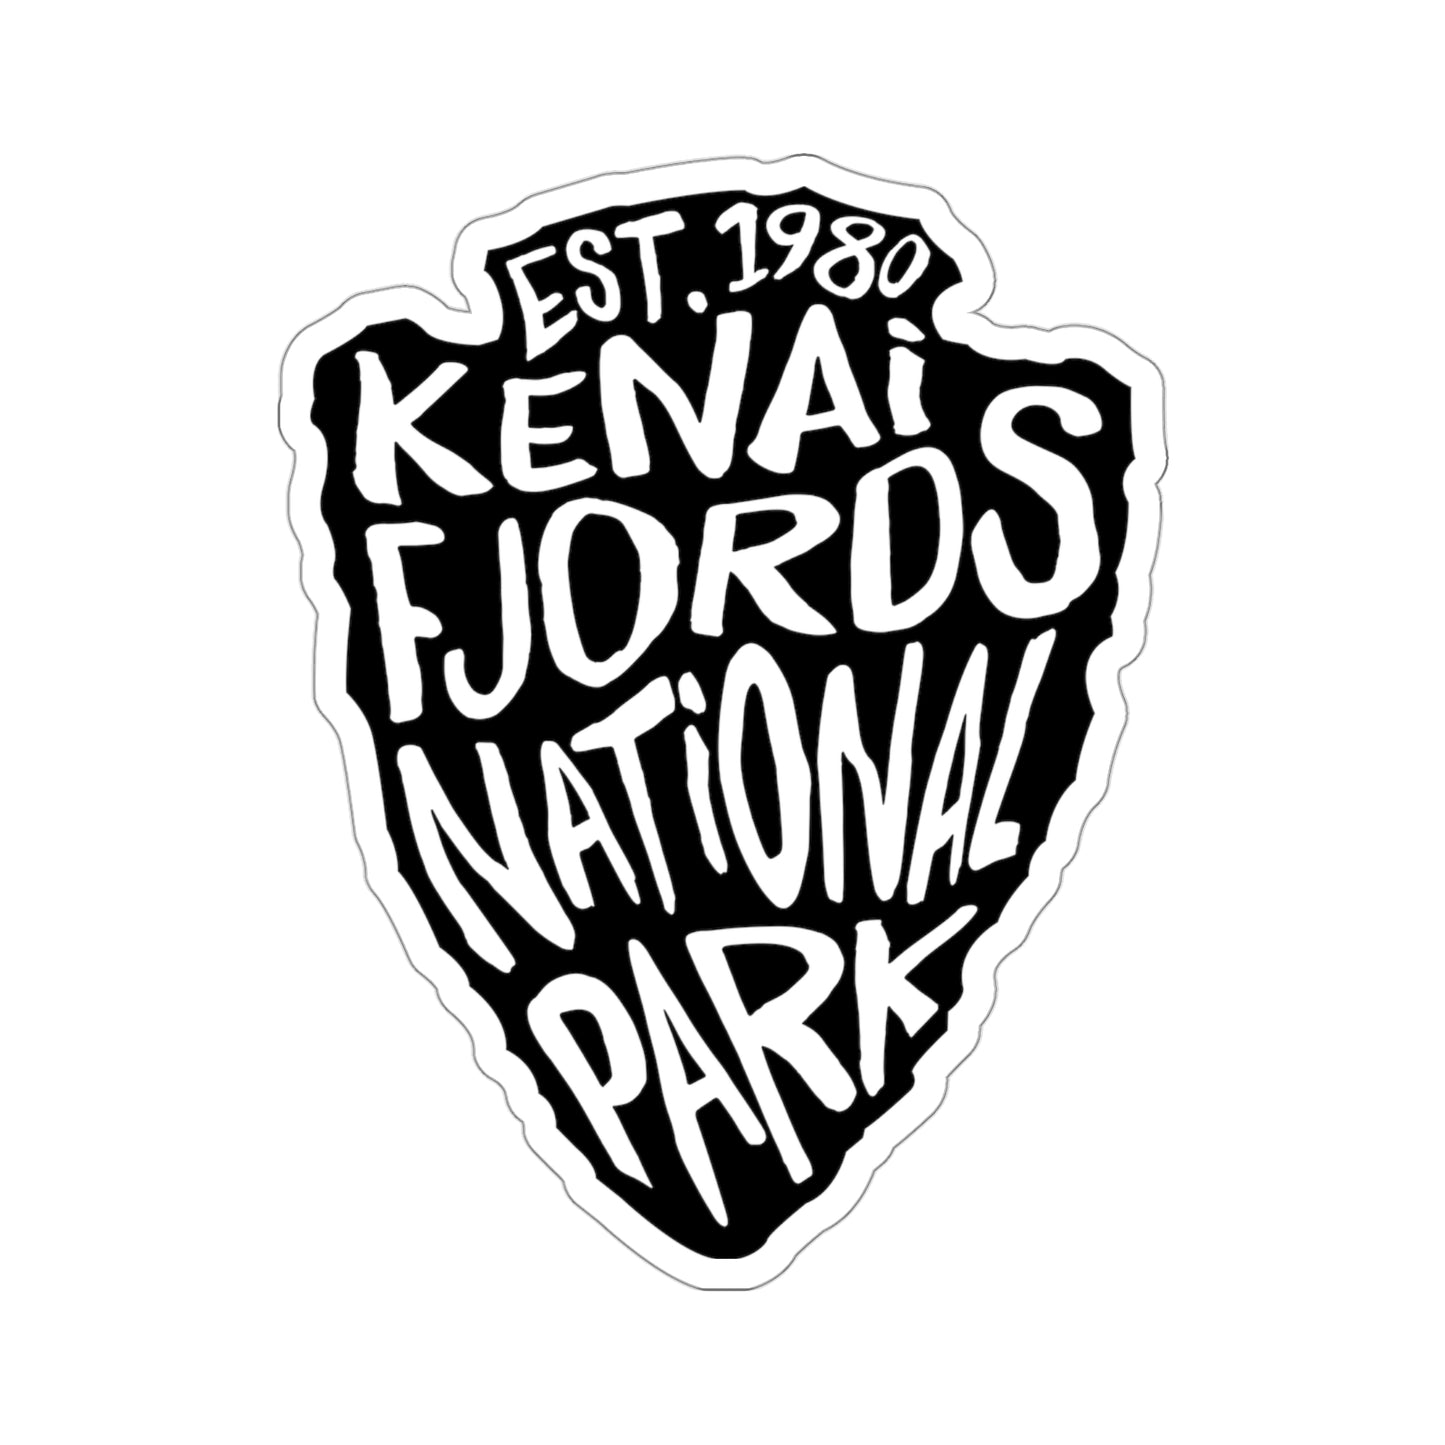 Kenai Fjords National Park Sticker - Arrow Head Design